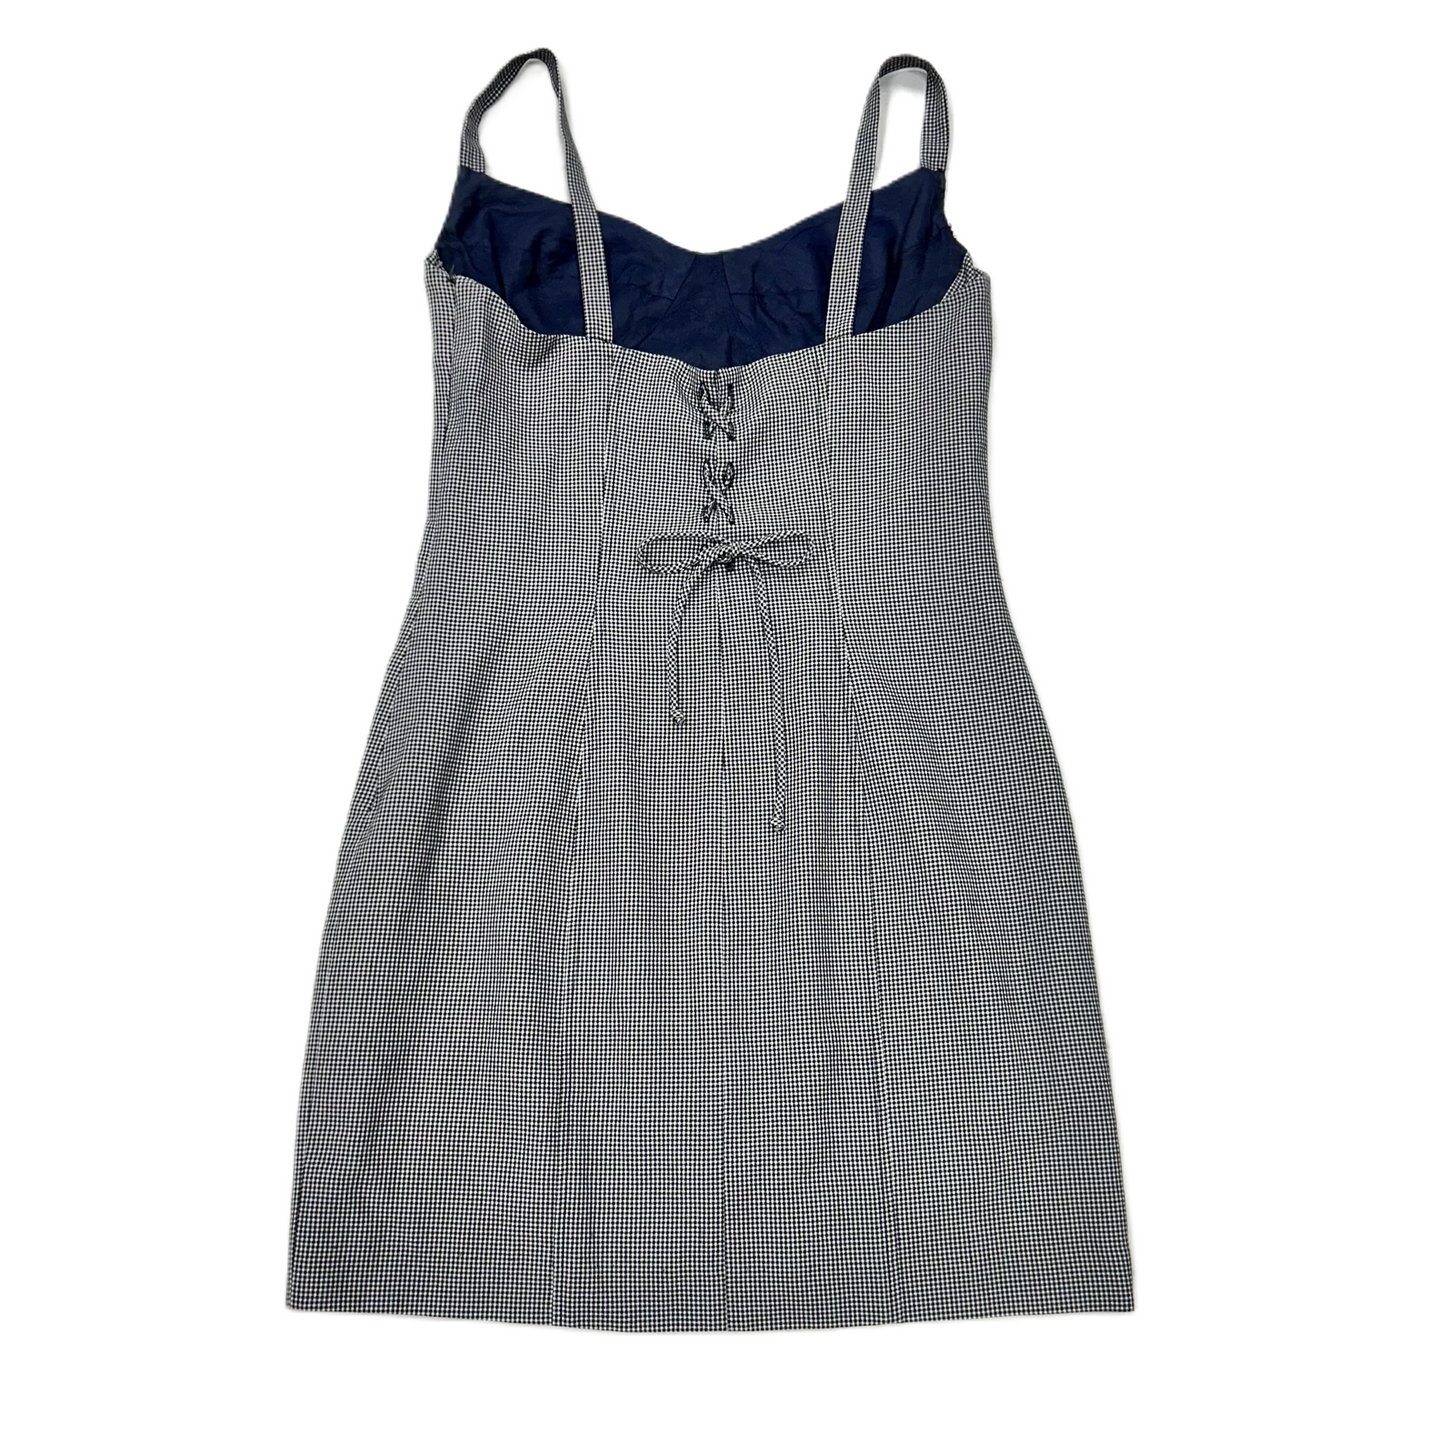 Blue & White Dress Designer By Nanette Lepore, Size: M